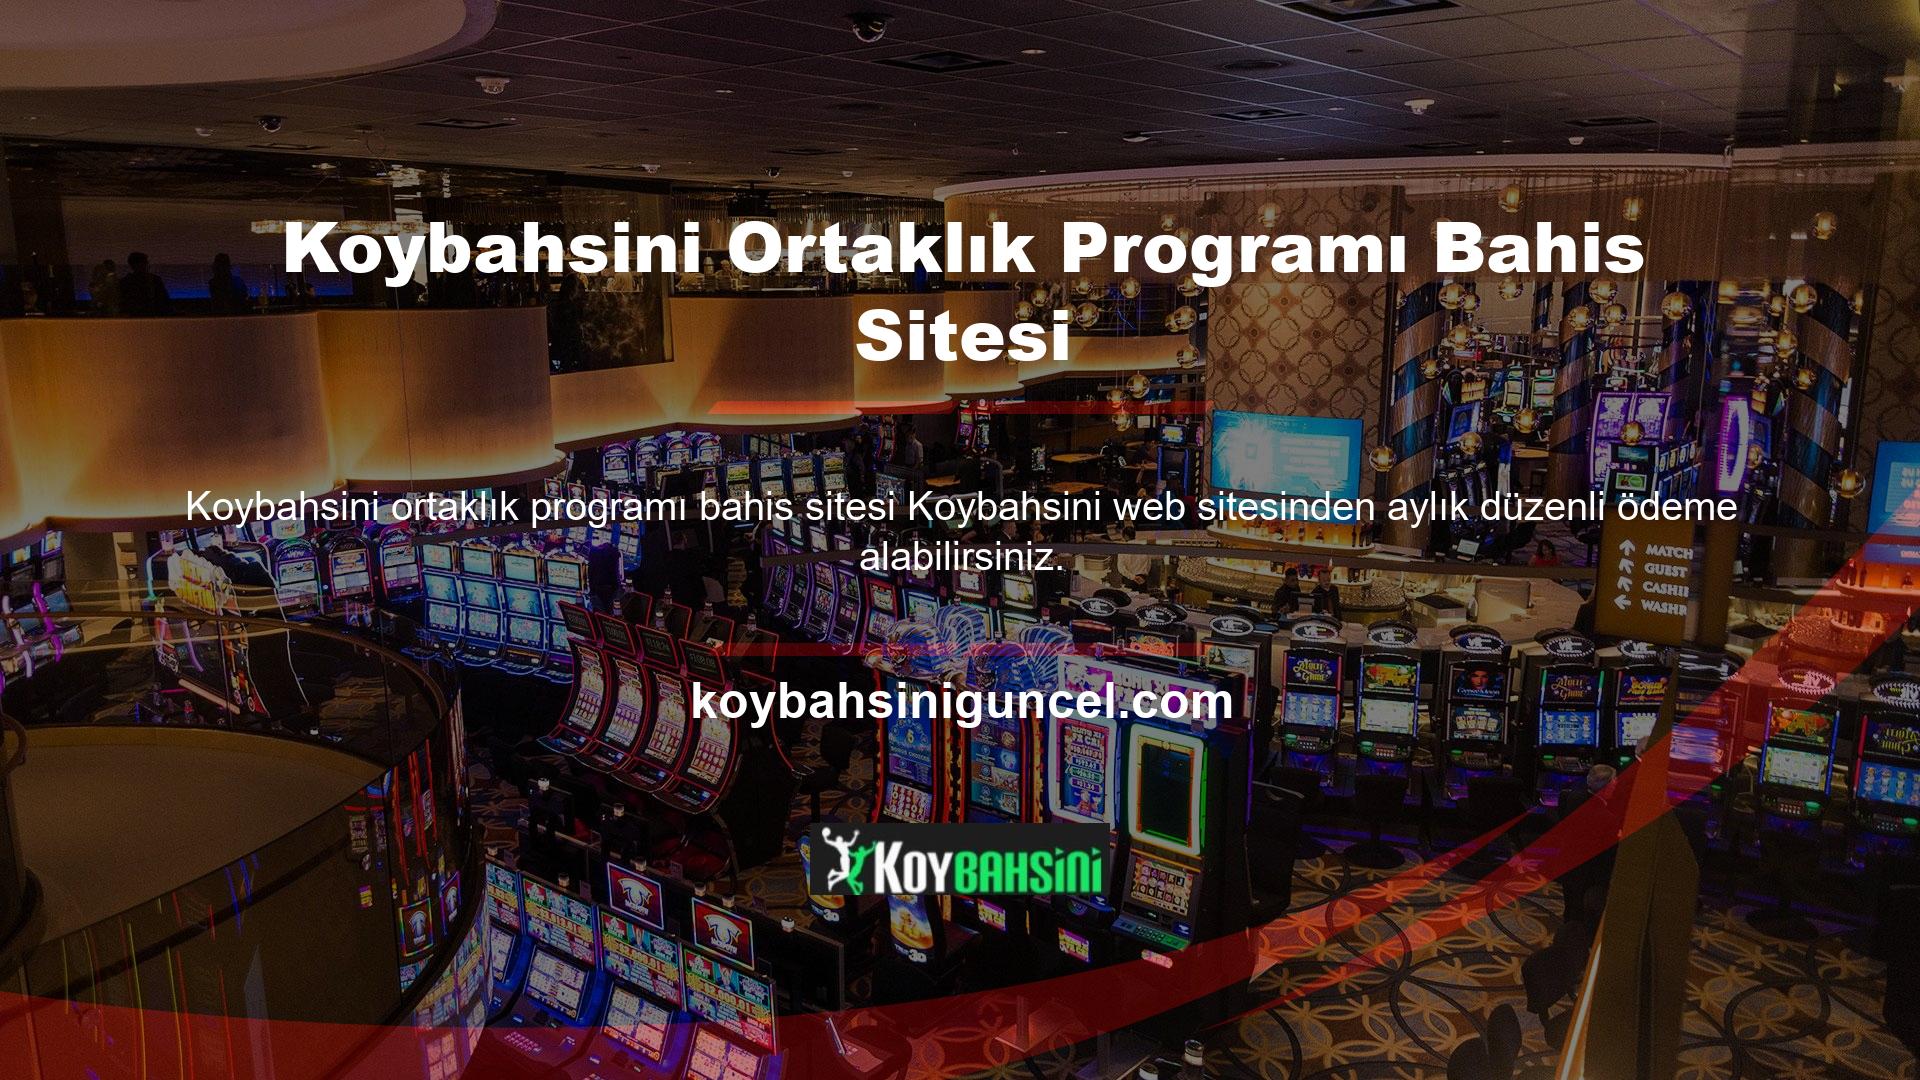 Bu web sitesi, Avrupa ve Türkiye'de yıllar boyunca sunduğu kaliteli hizmet sayesinde bahis casino pazarında lider konumunu sürdürmektedir